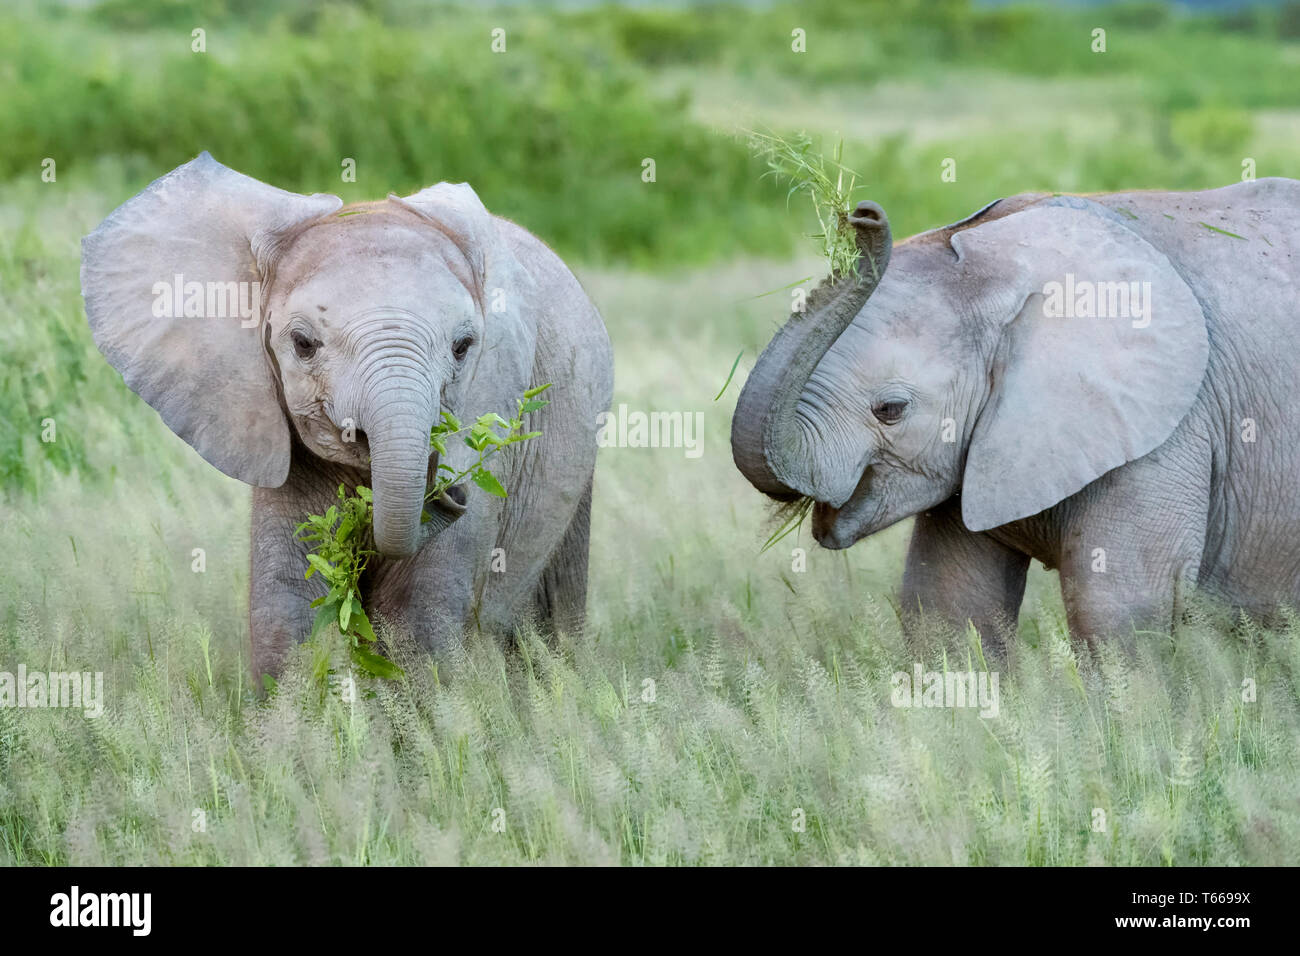 Dos elefante africano (Loxodonta africana) del bebé, comiendo y jugando con la hierba en la sabana, el parque nacional de Amboseli, Kenia. Foto de stock